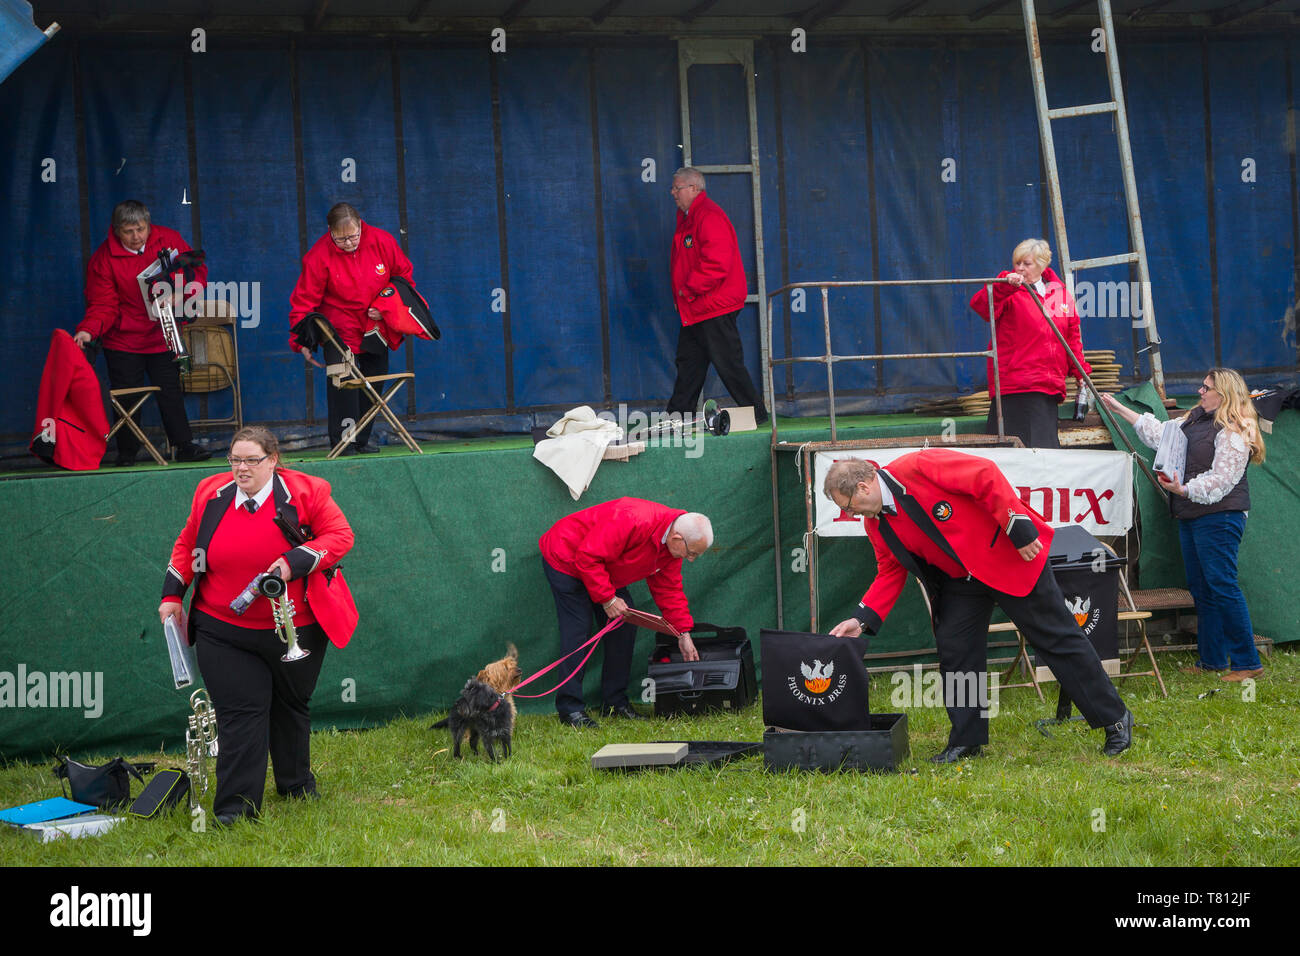 Miembros de Phoenix Brass Band en chaquetas de color rojo brillante pack después de su actuación en el espectáculo de un país. Foto de stock